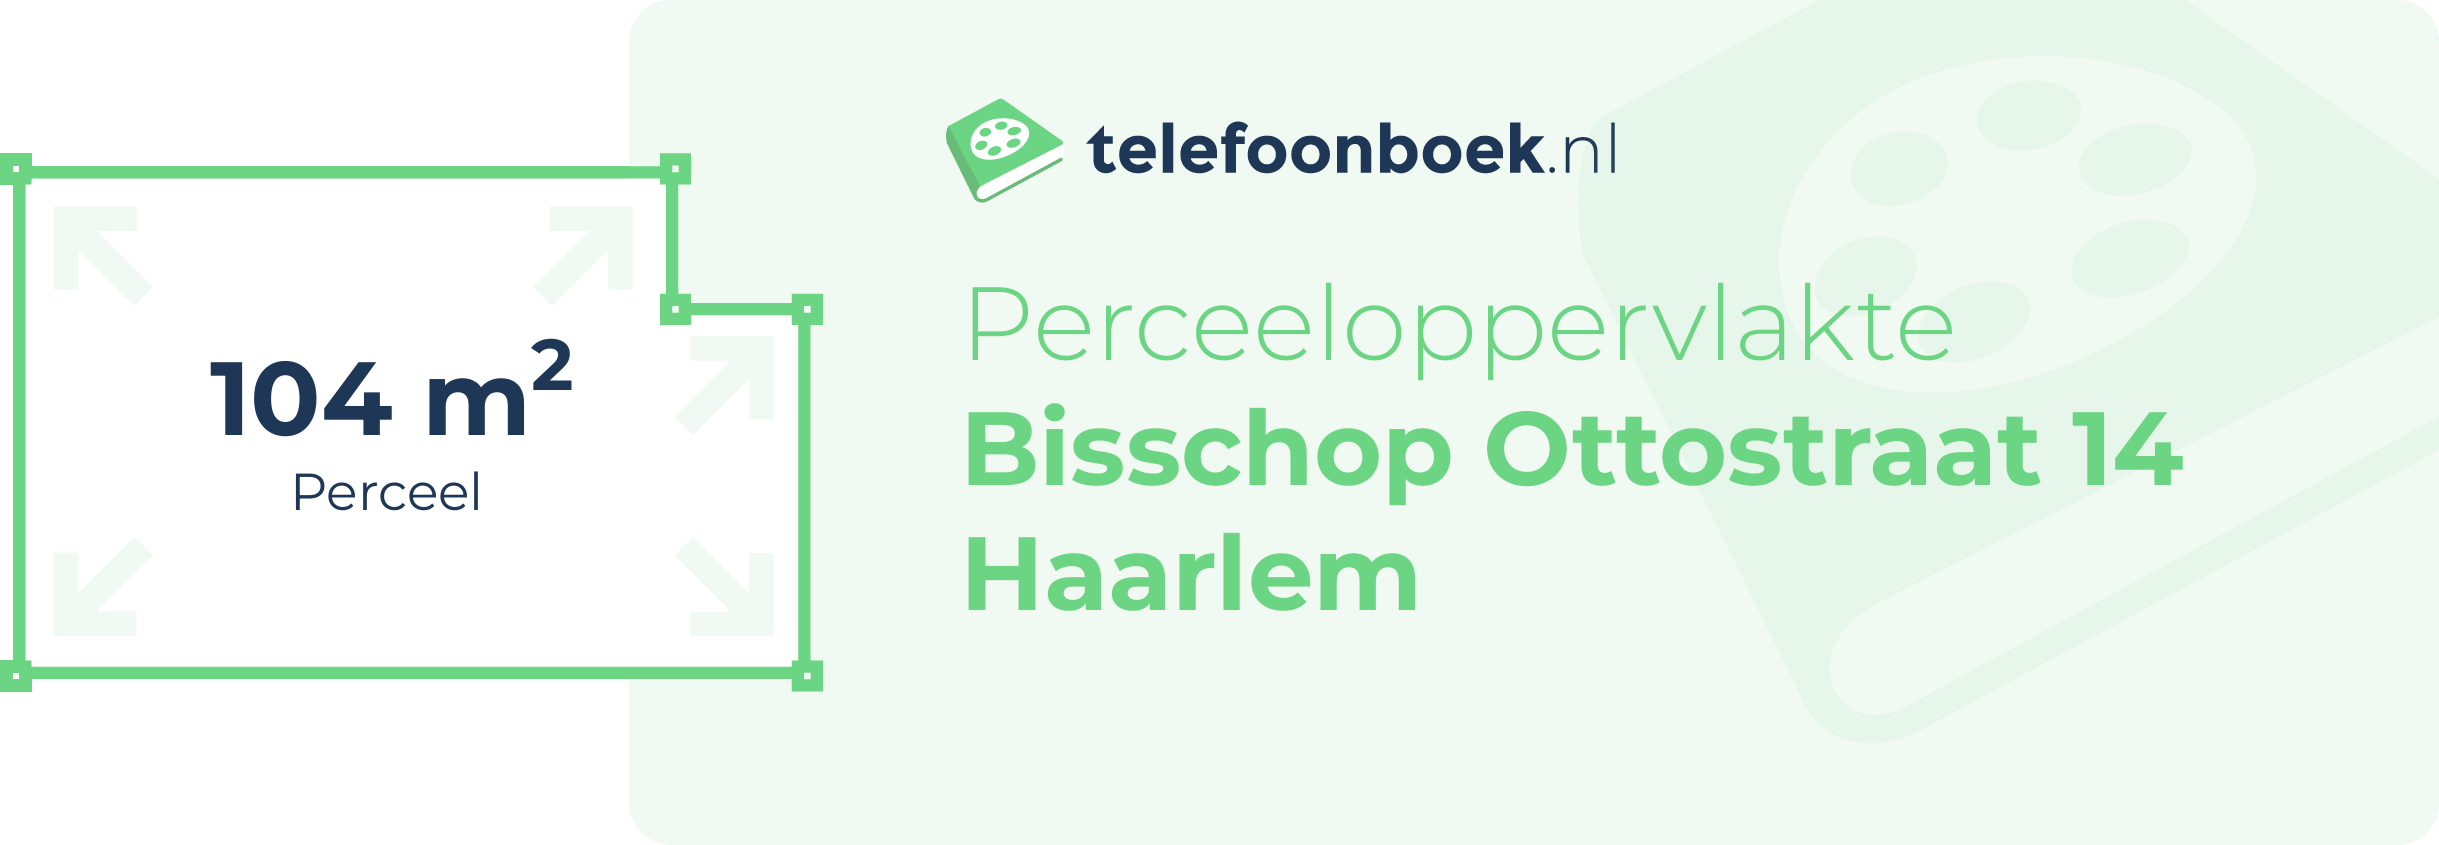 Perceeloppervlakte Bisschop Ottostraat 14 Haarlem